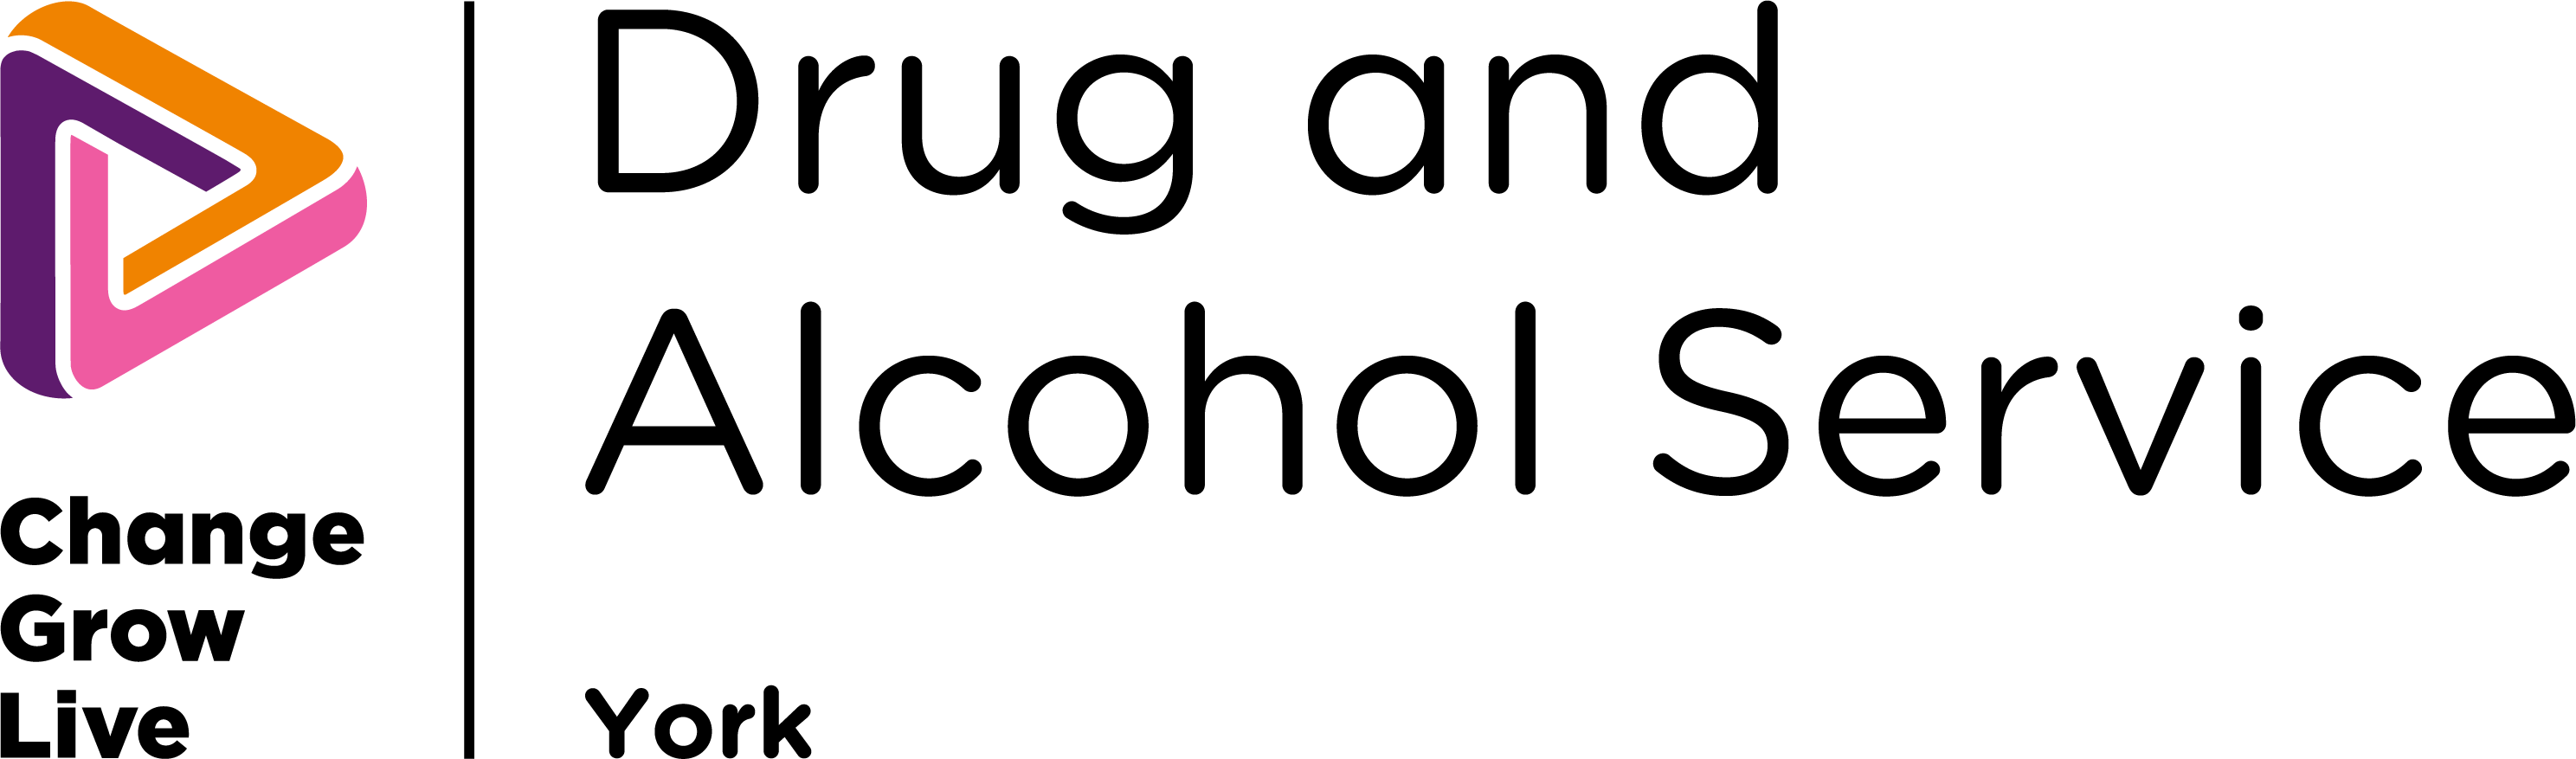 Drug and Alcohol Service - York colour logo